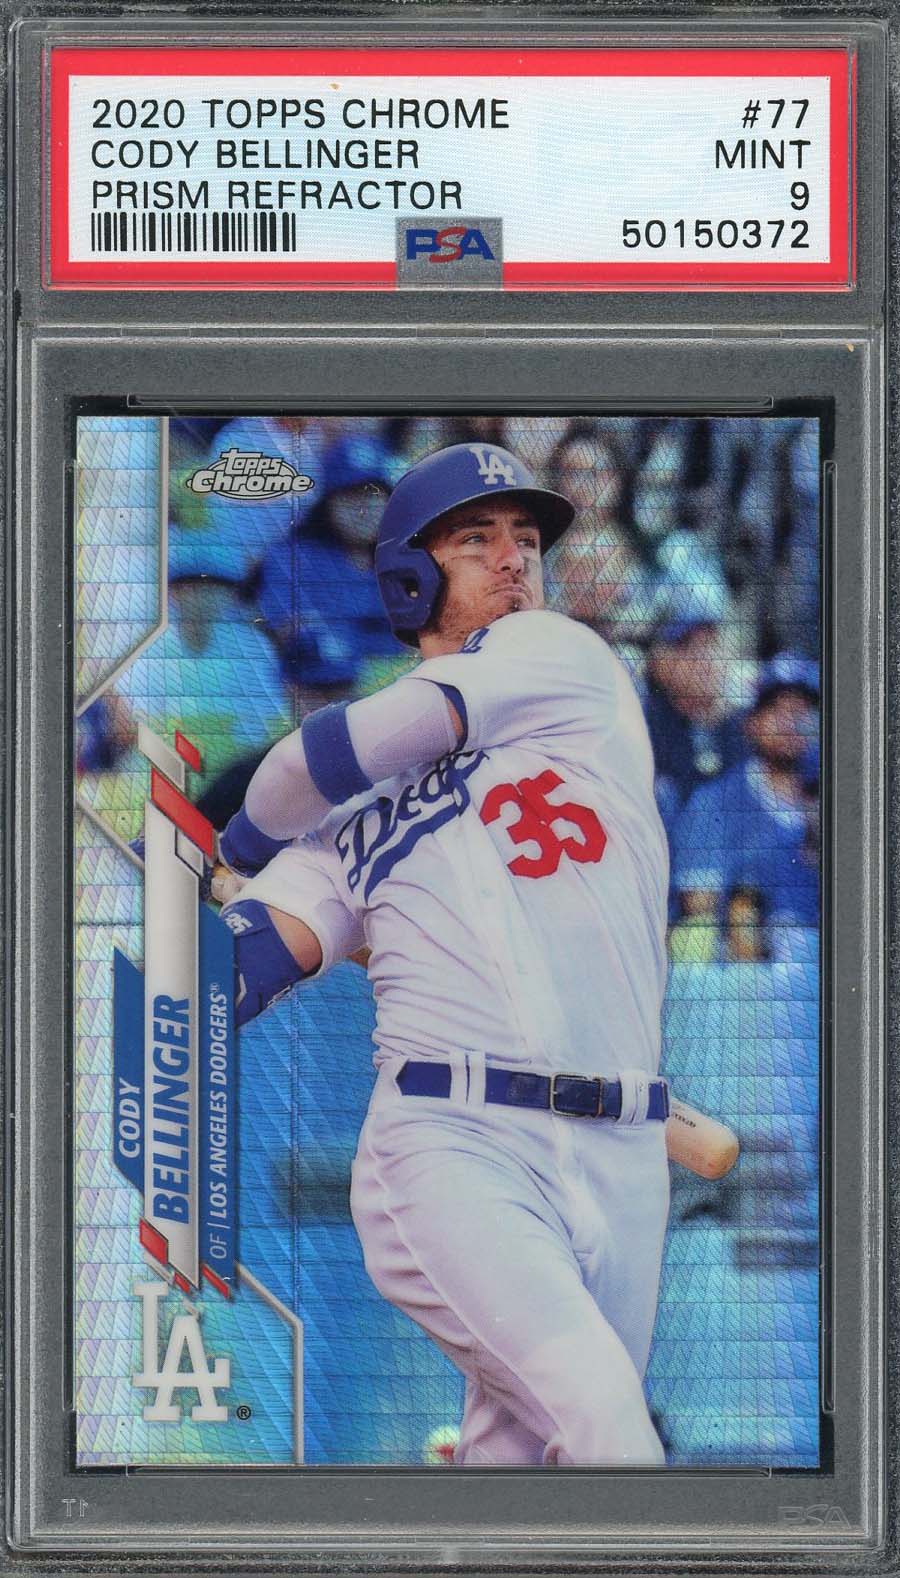 2019 Topps Chrome Cody Bellinger Los Angeles Dodgers Baseball Card